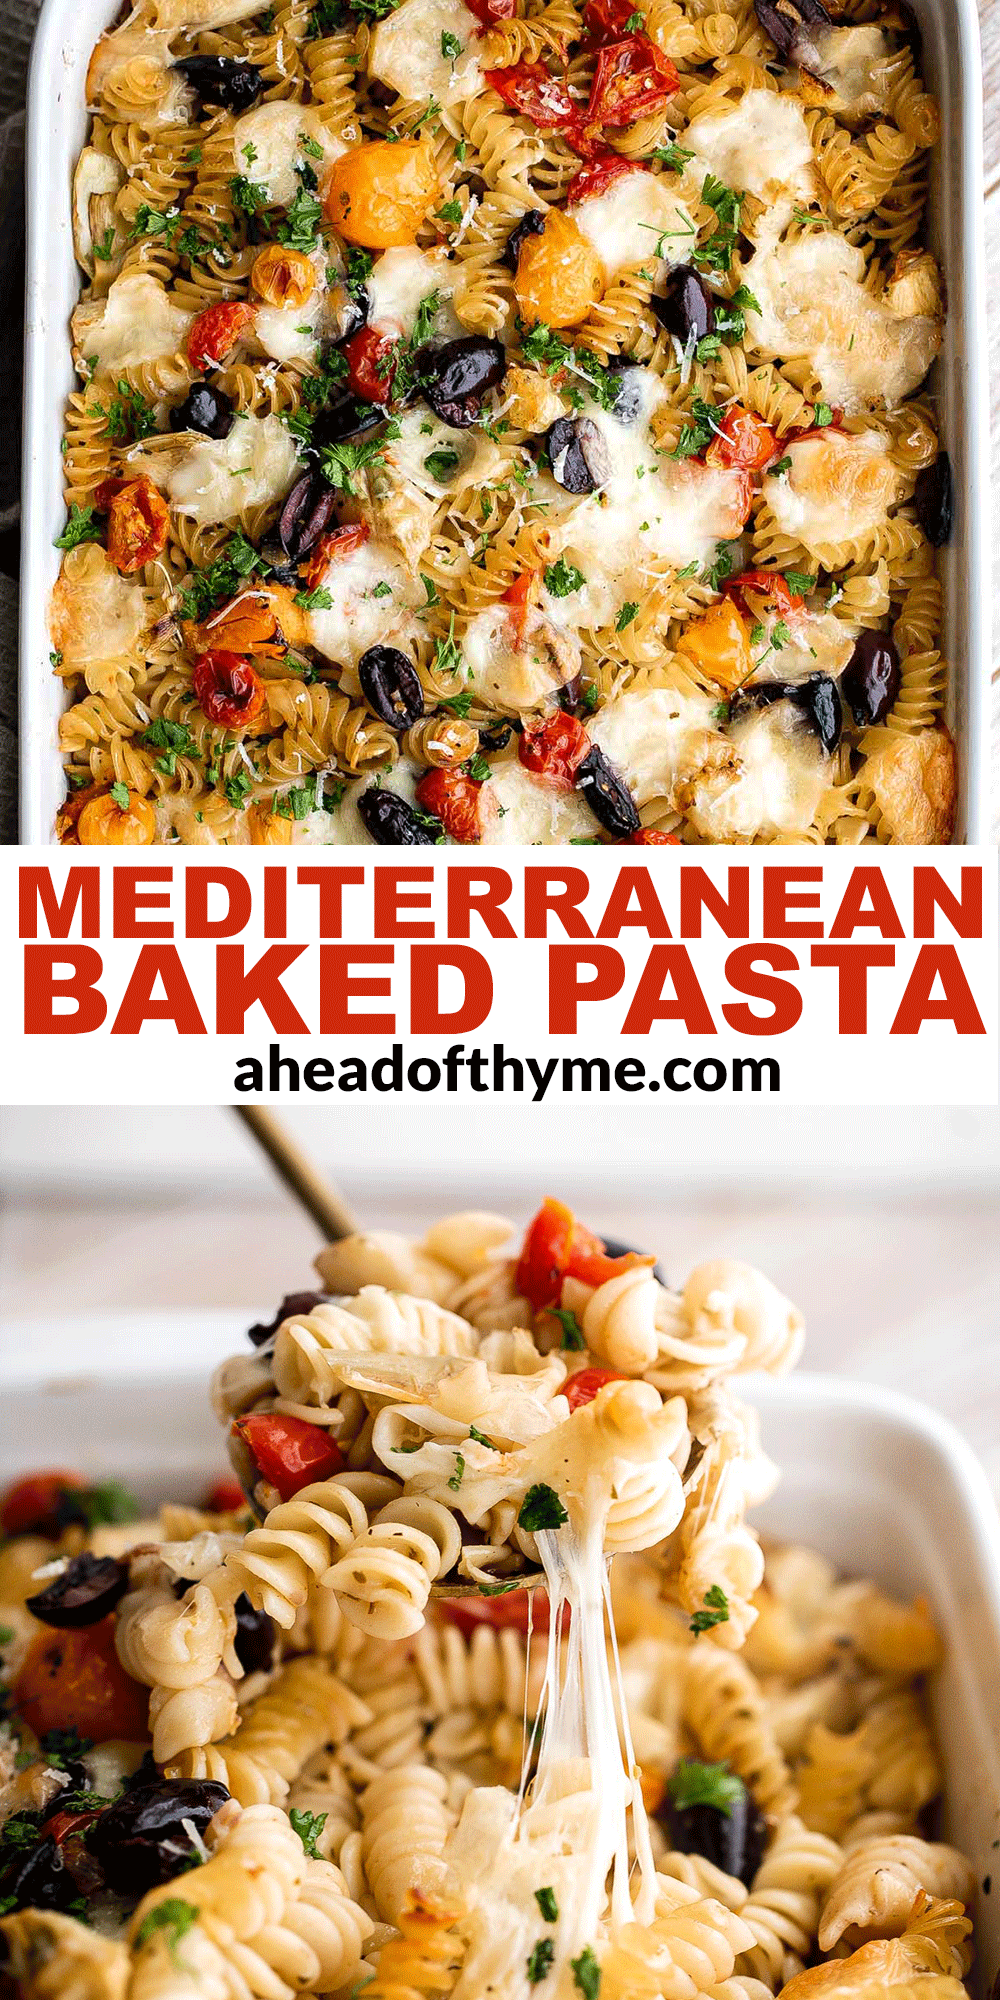 Baked Mediterranean Pasta